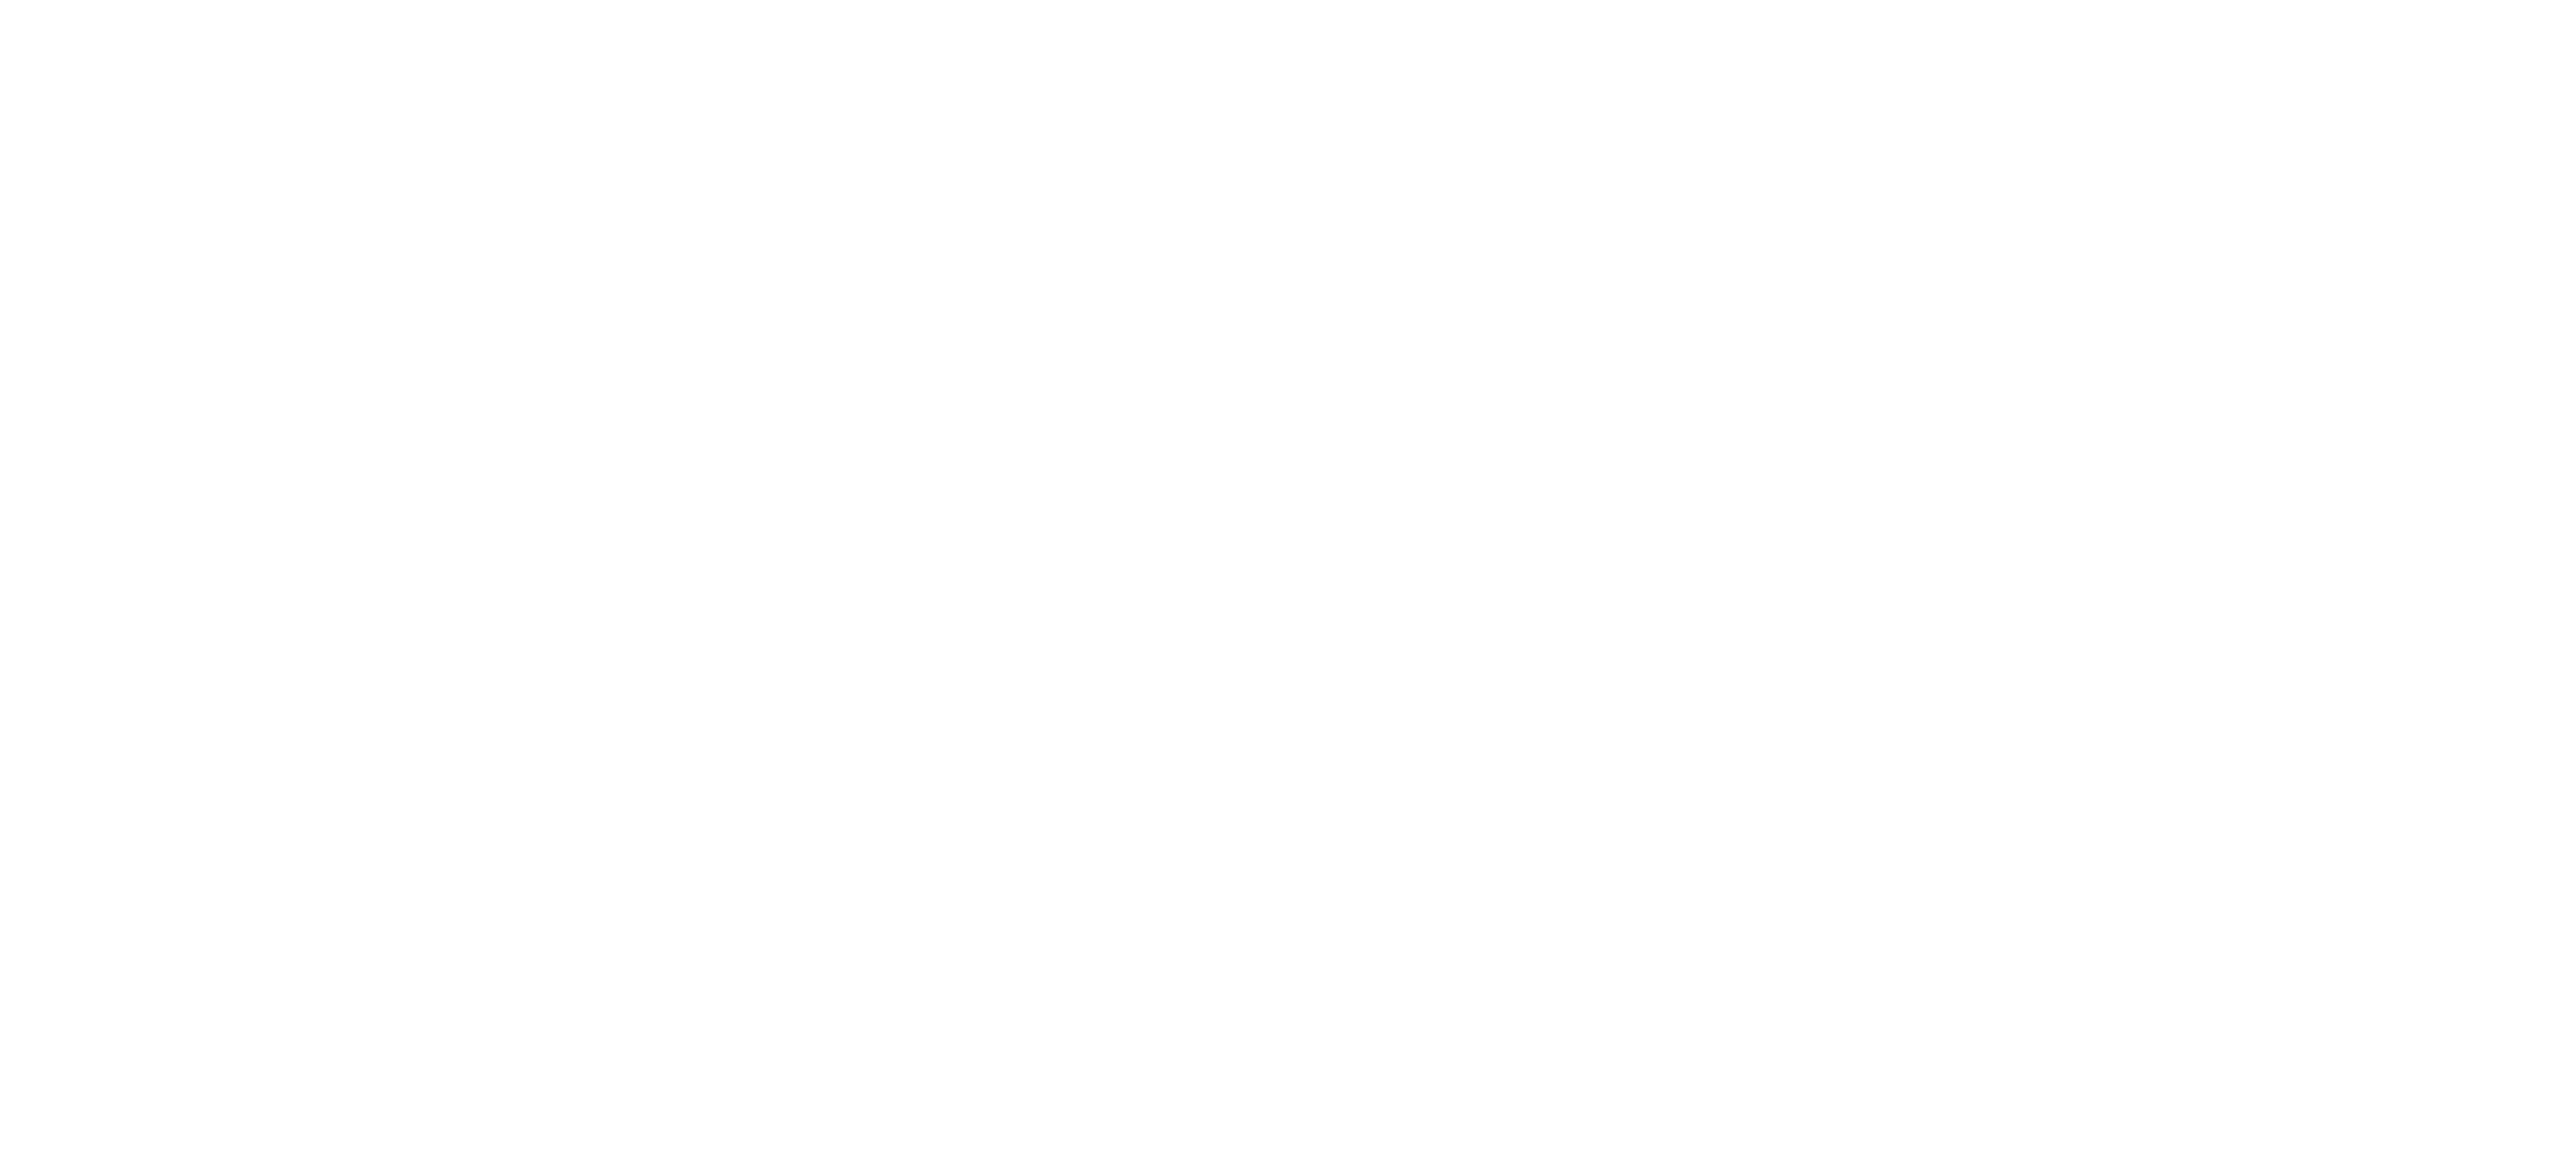 Nefco logo in white